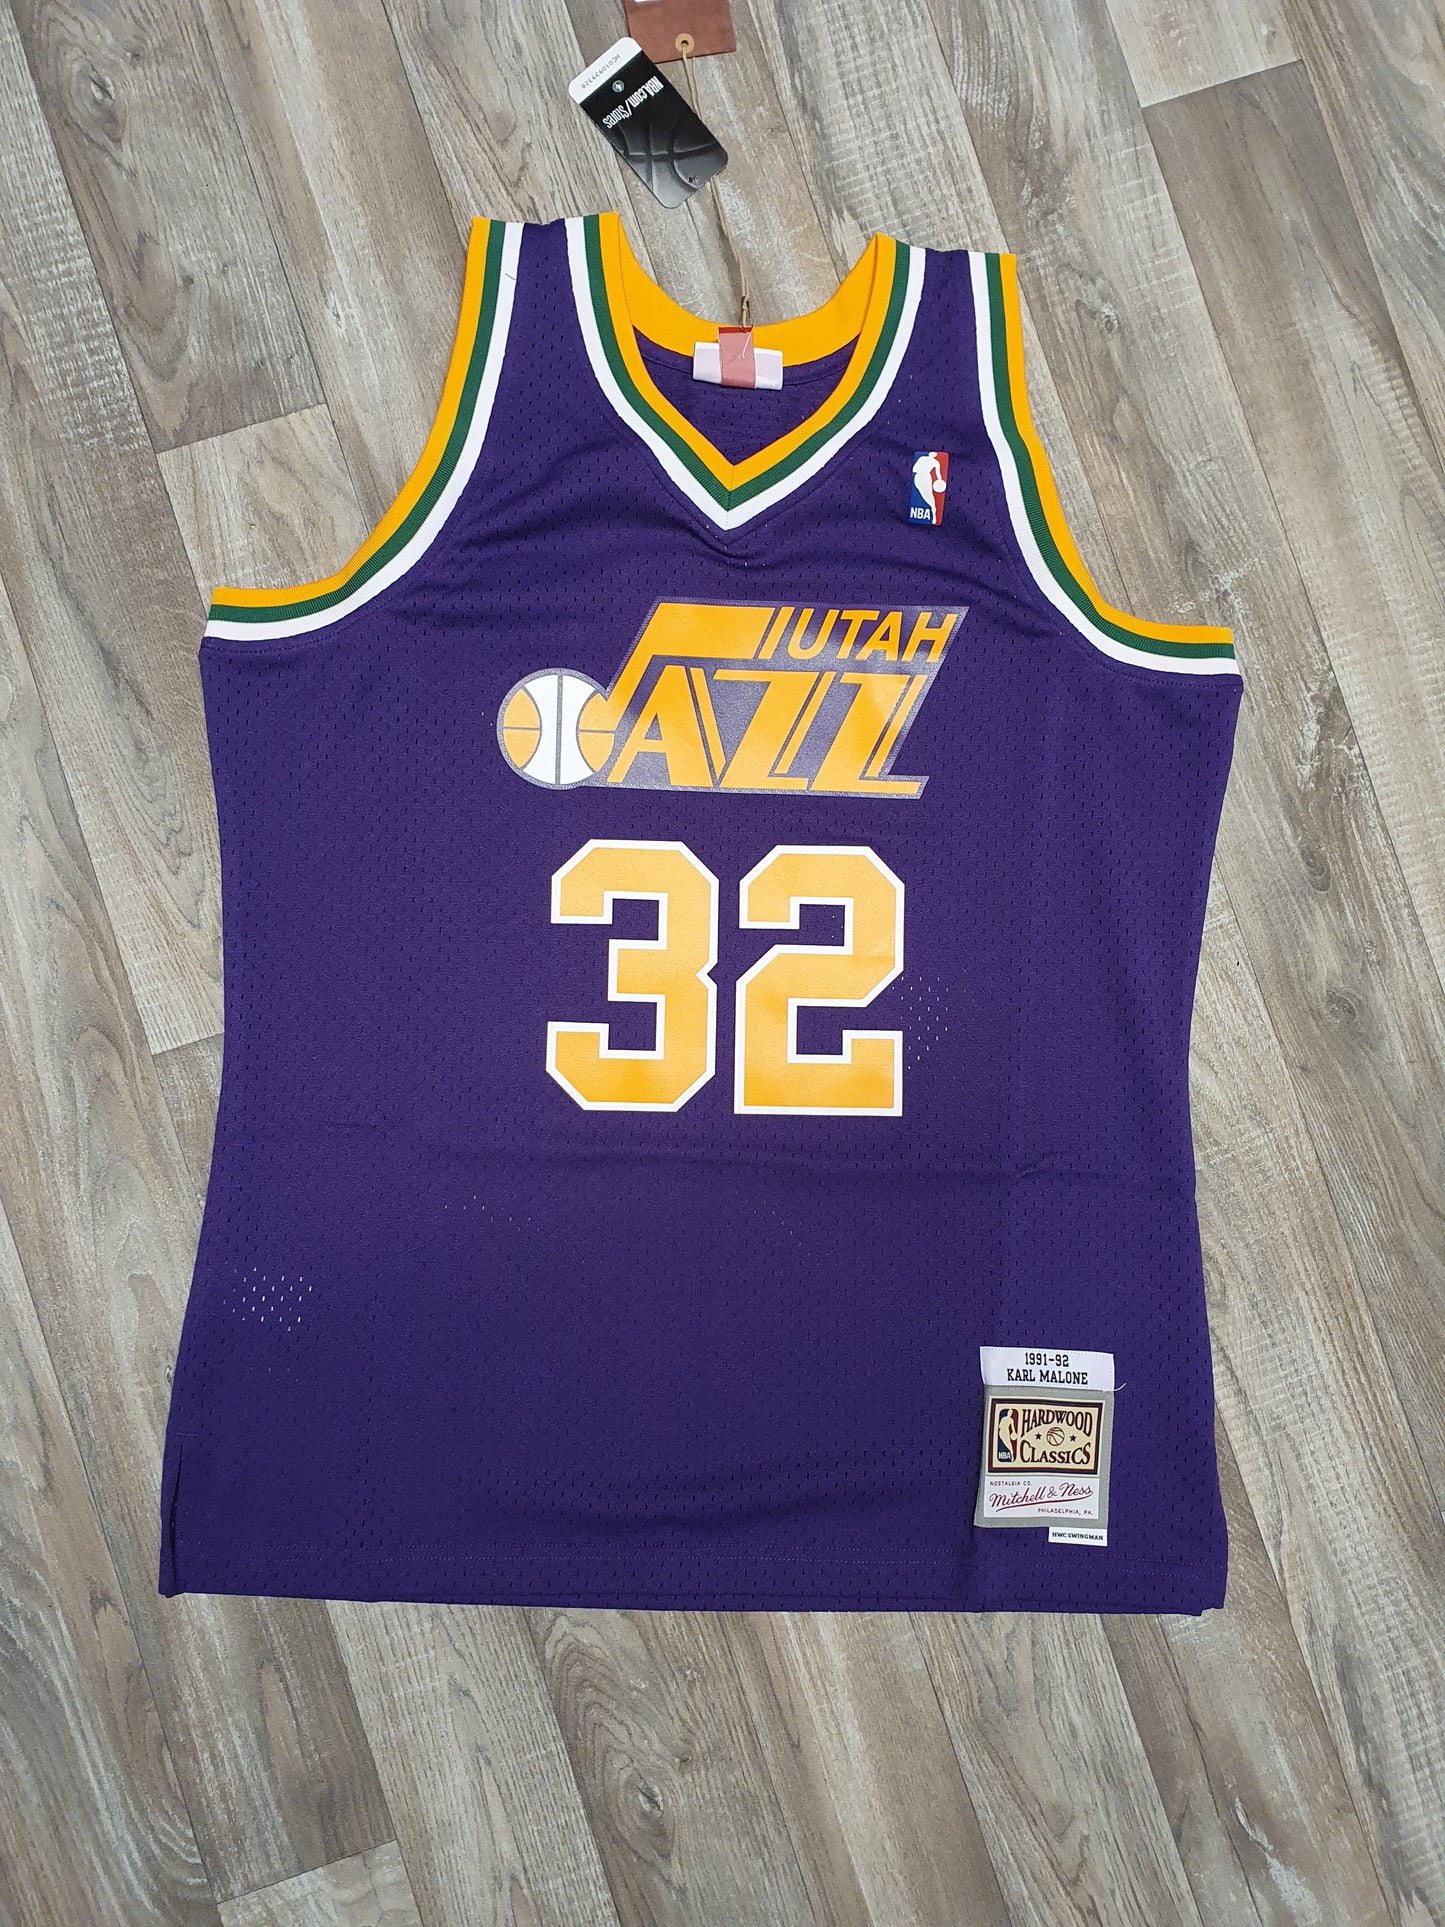 Karl Malone Utah Jazz 1991-92 Jersey Size Medium